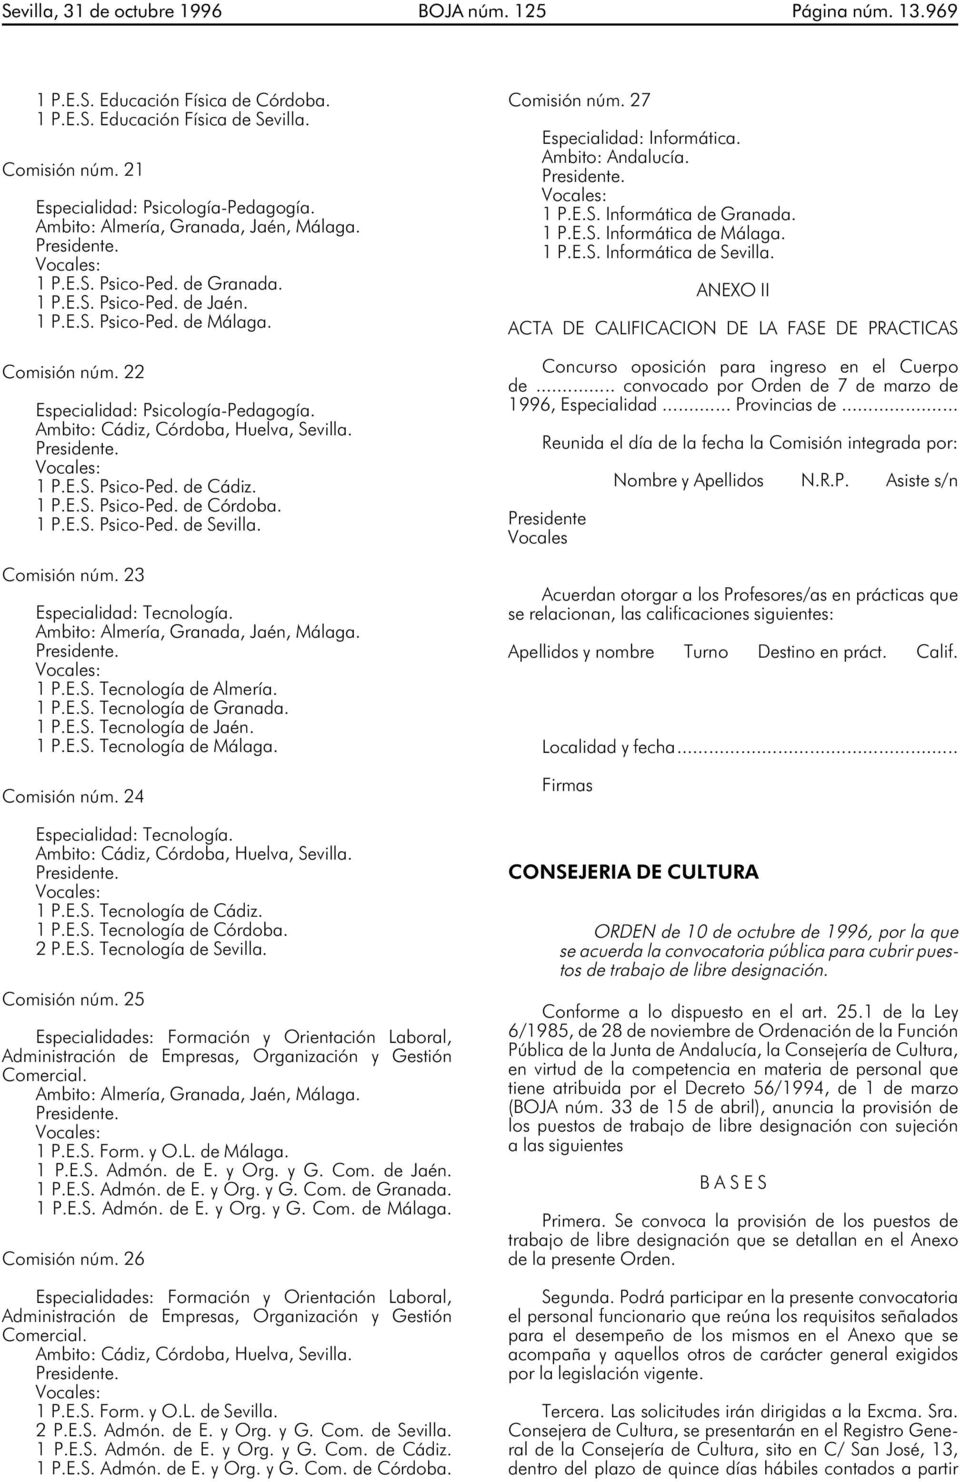 1 P.E.S. Tecnología de Almería. 1 P.E.S. Tecnología de Granada. 1 P.E.S. Tecnología de Jaén. 1 P.E.S. Tecnología de Málaga. Comisión núm. 24 Especialidad: Tecnología. 1 P.E.S. Tecnología de Cádiz.